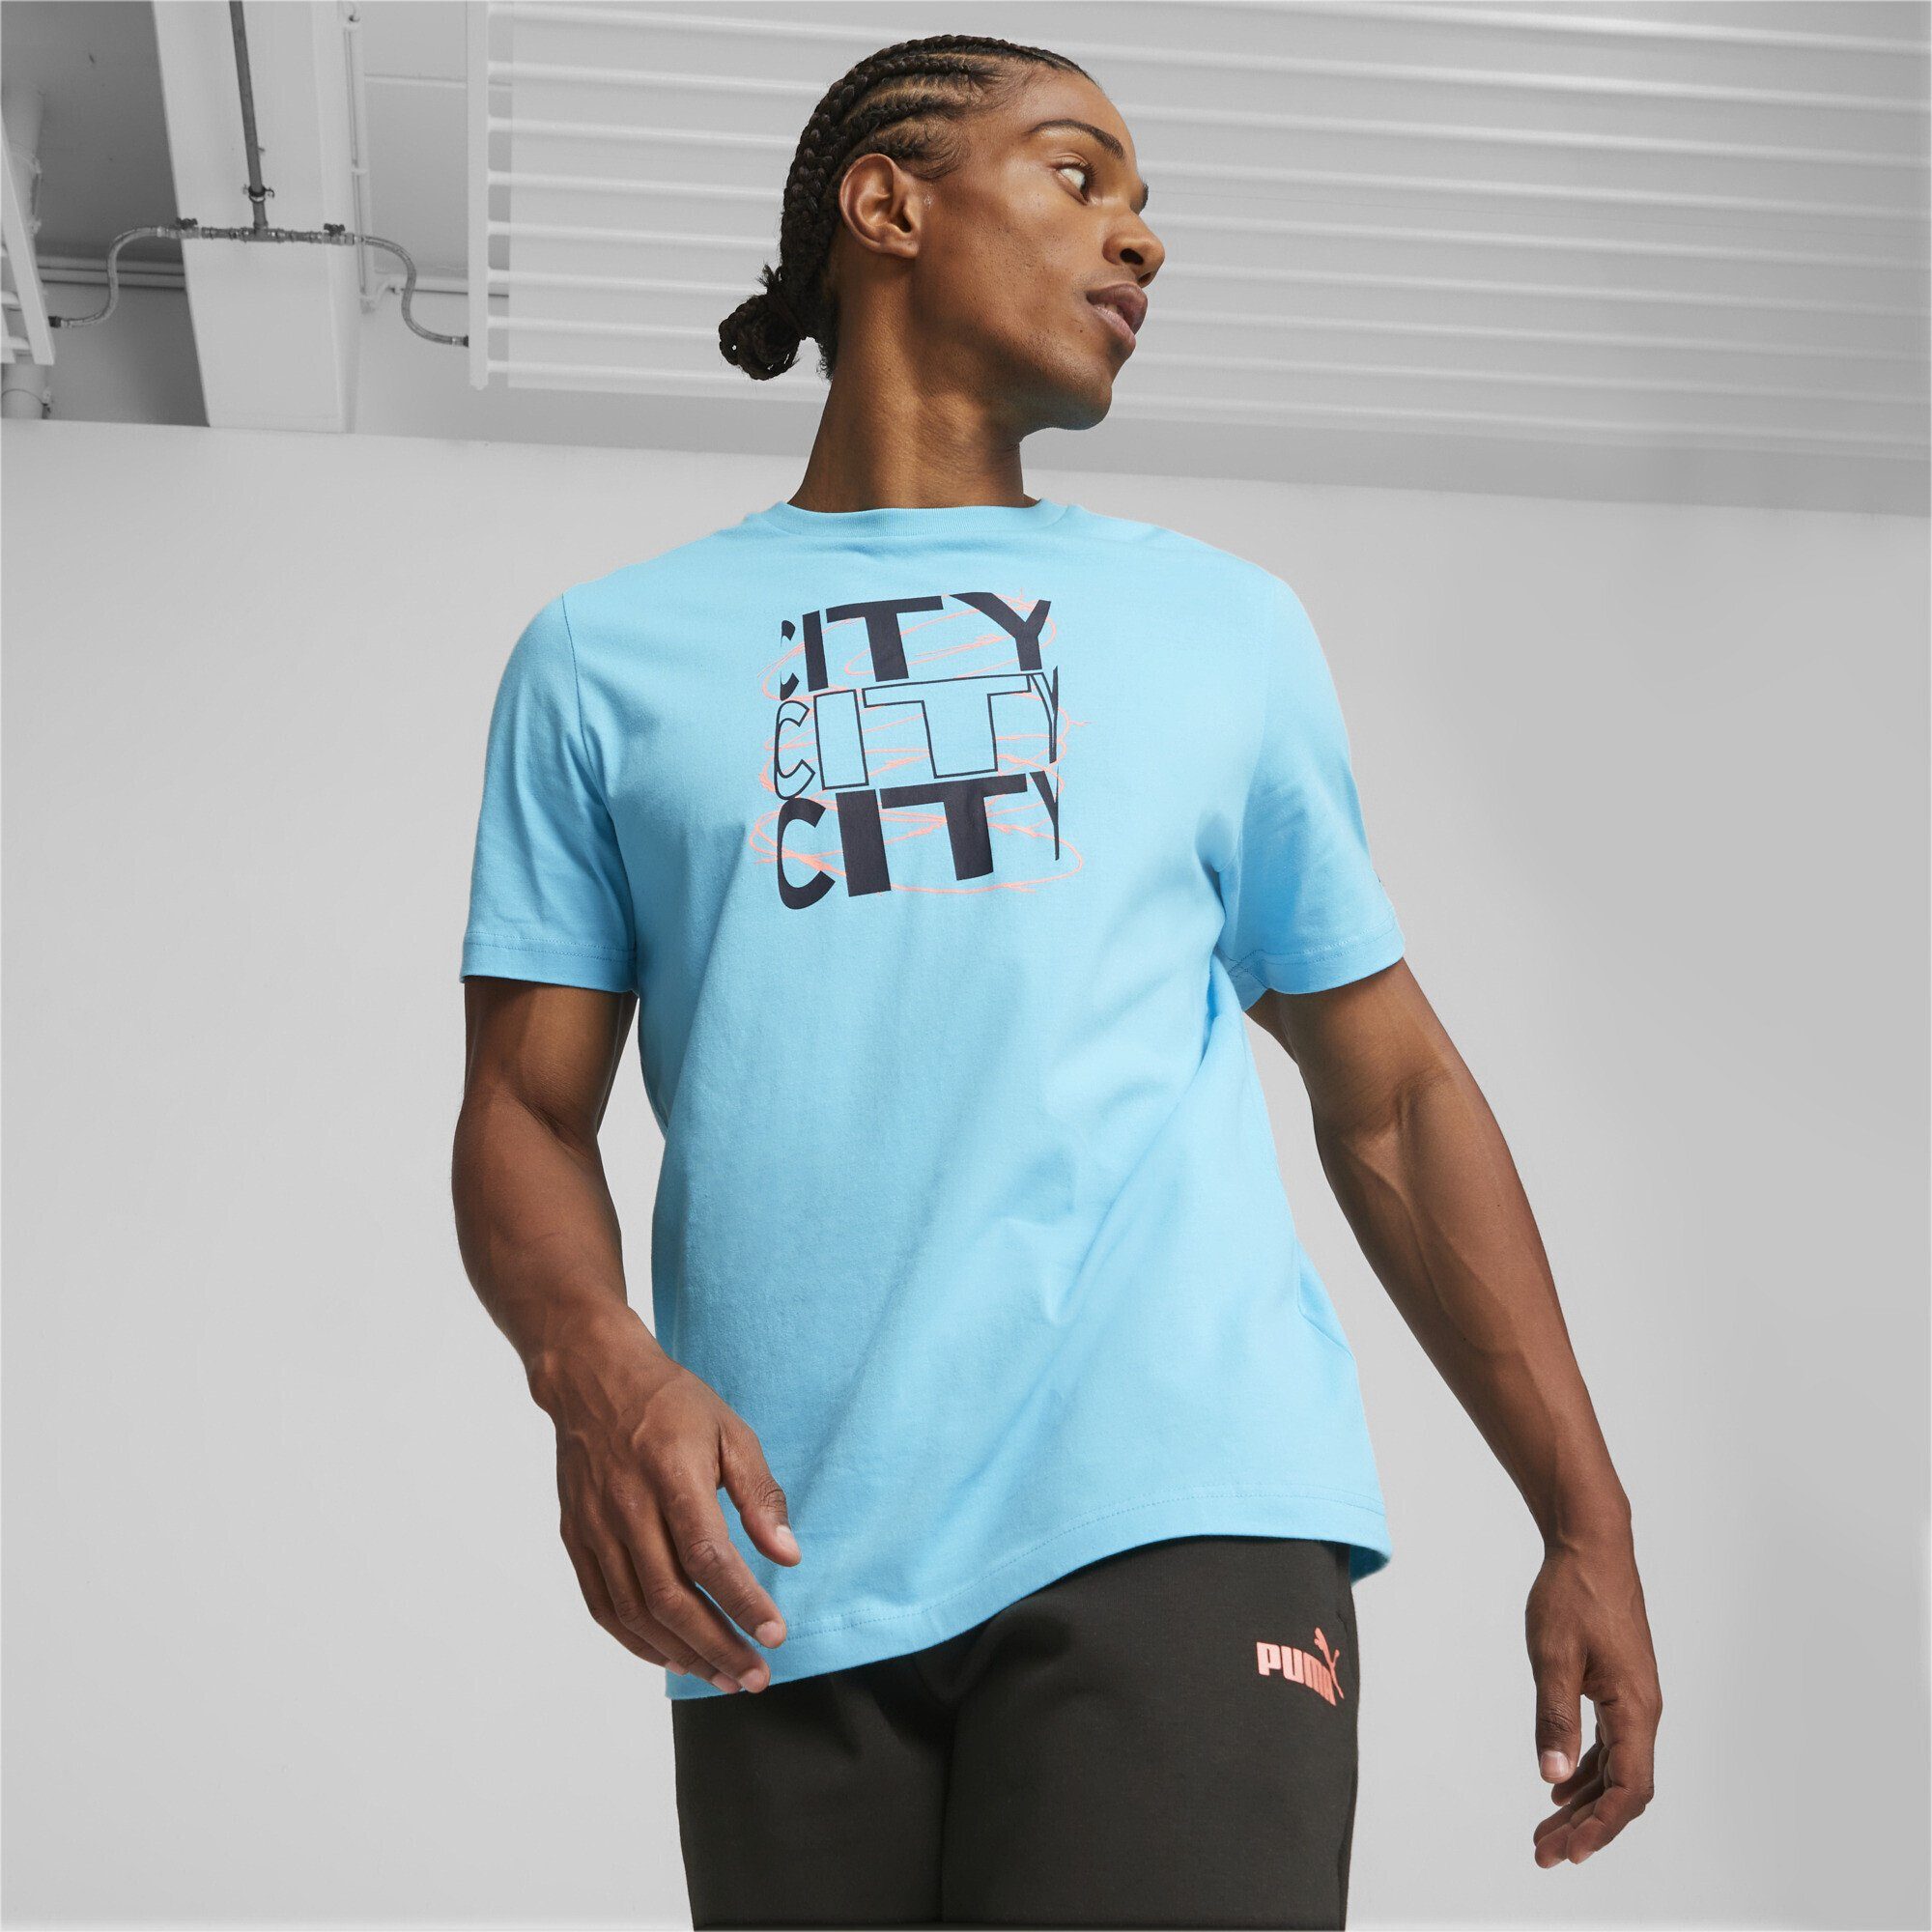 PUMA T-Shirt Manchester City FtblCore Dark Graphic T-Shirt Navy Hero Herren Black Blue